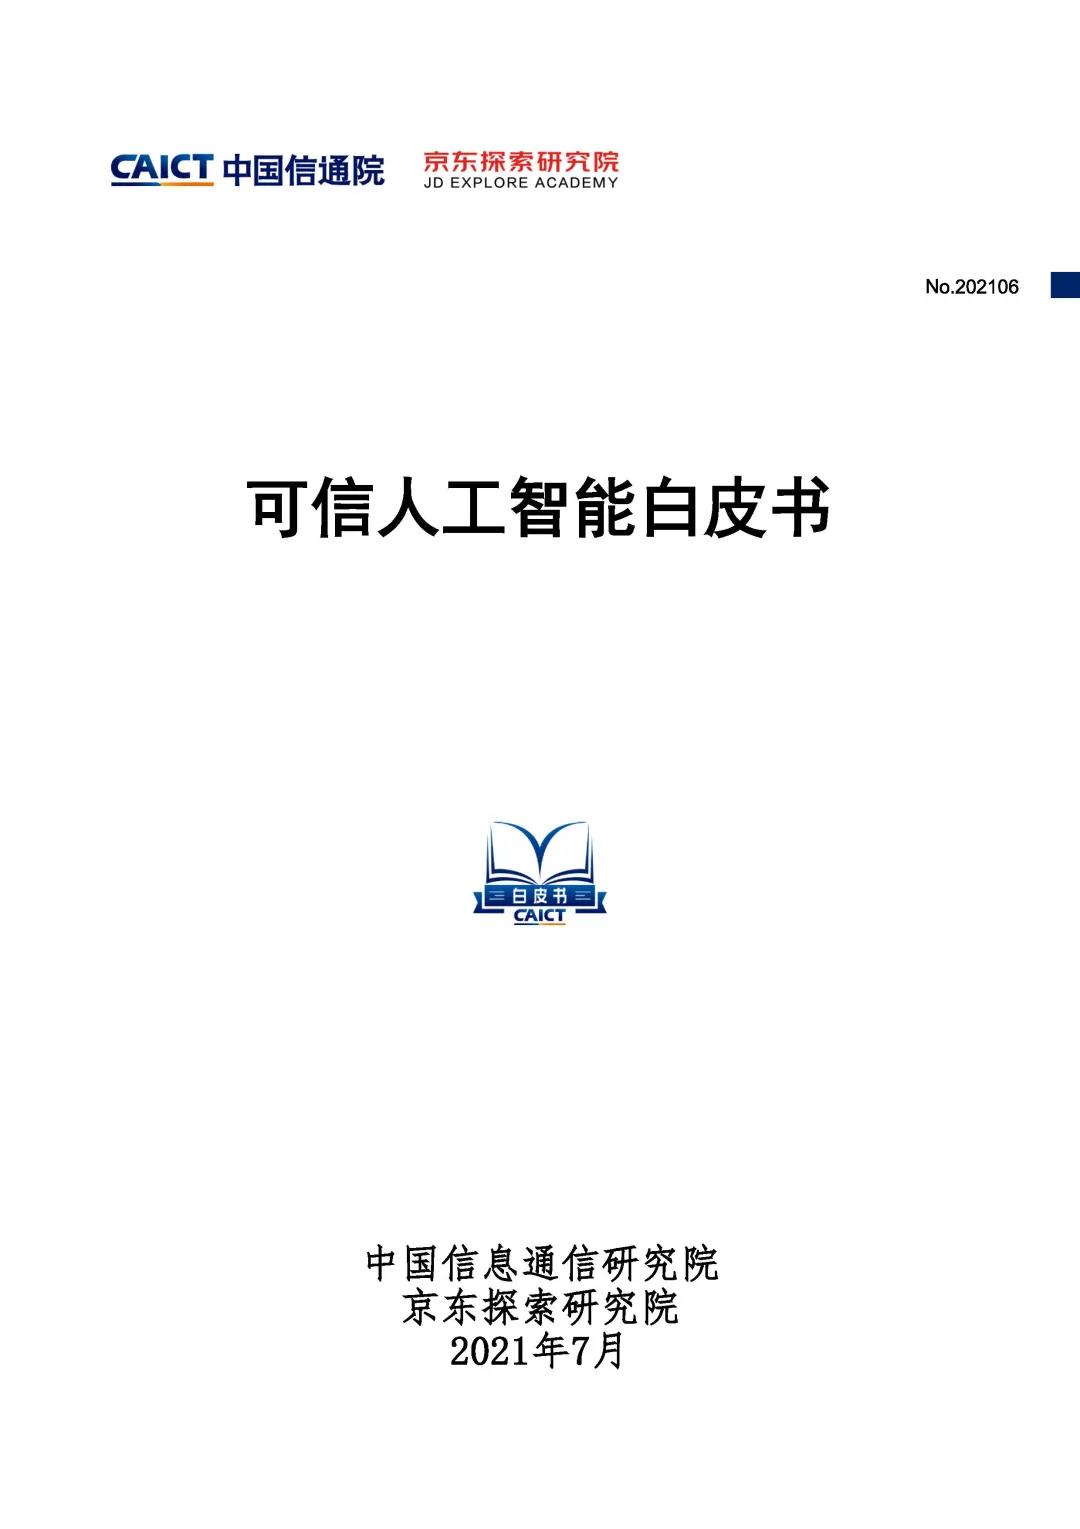 中国信通院&京东探索研究院联合发布《可信人工智能白皮书》